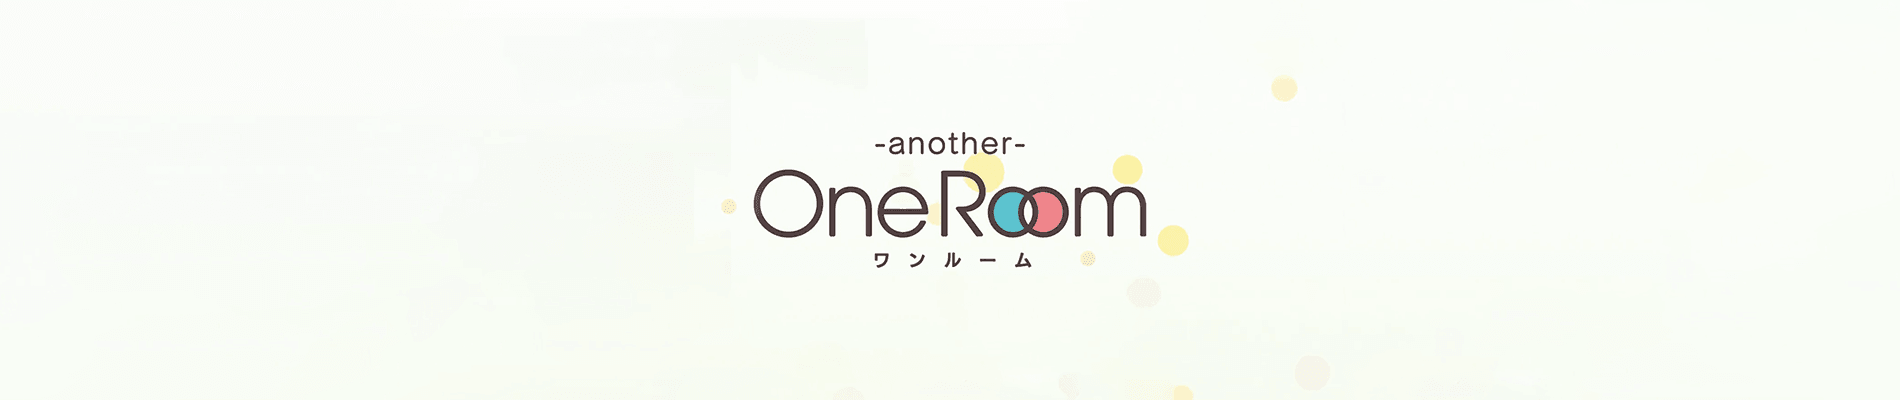 One Room (OneRoom) · AniList